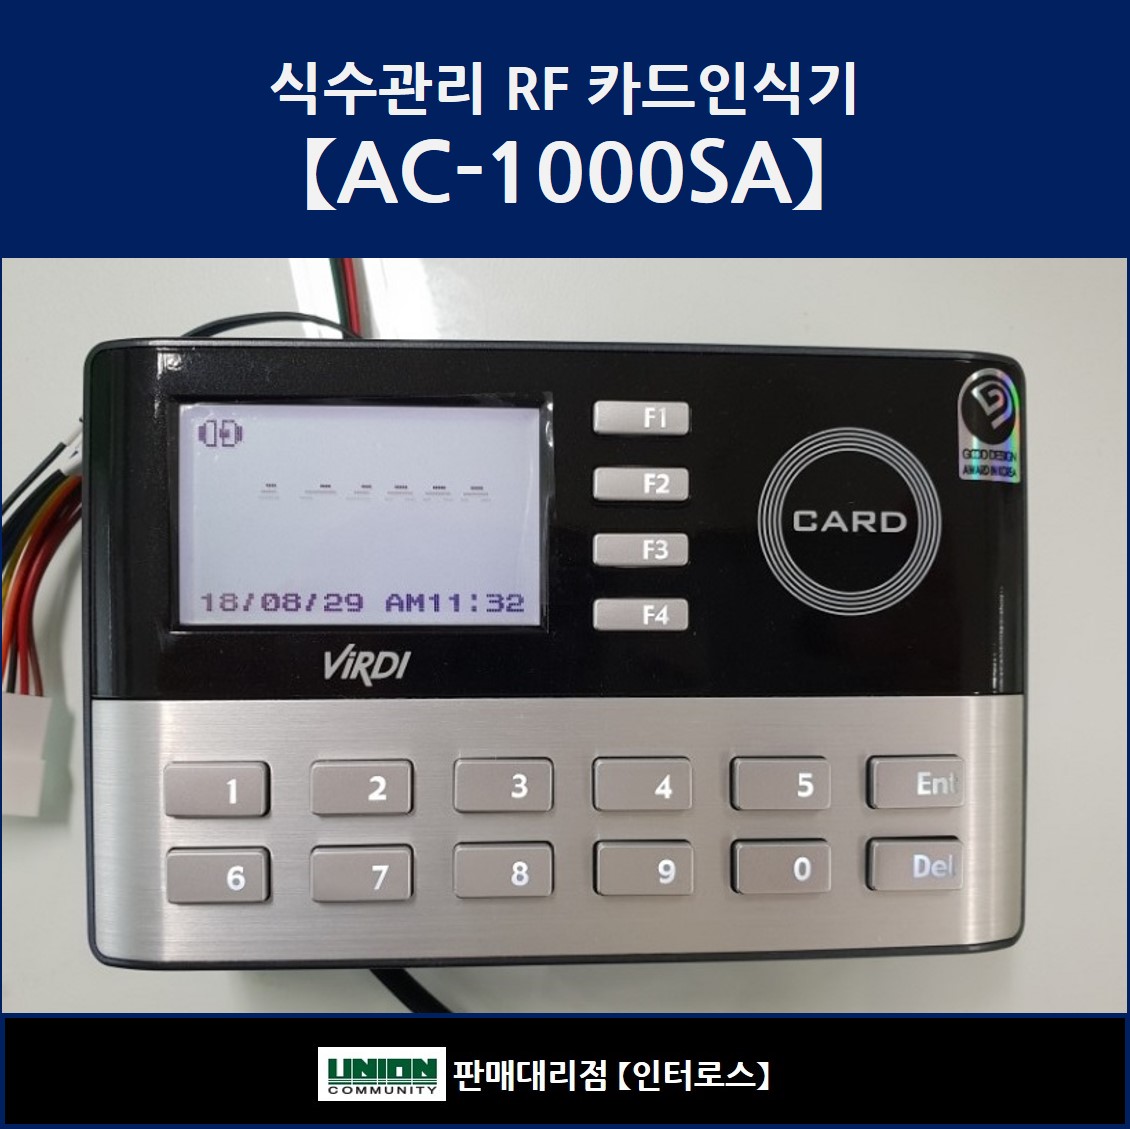 AC-1000SA식수관리/식수관리프로그램UNIS4.0/RF카드인식/13.56Mhz